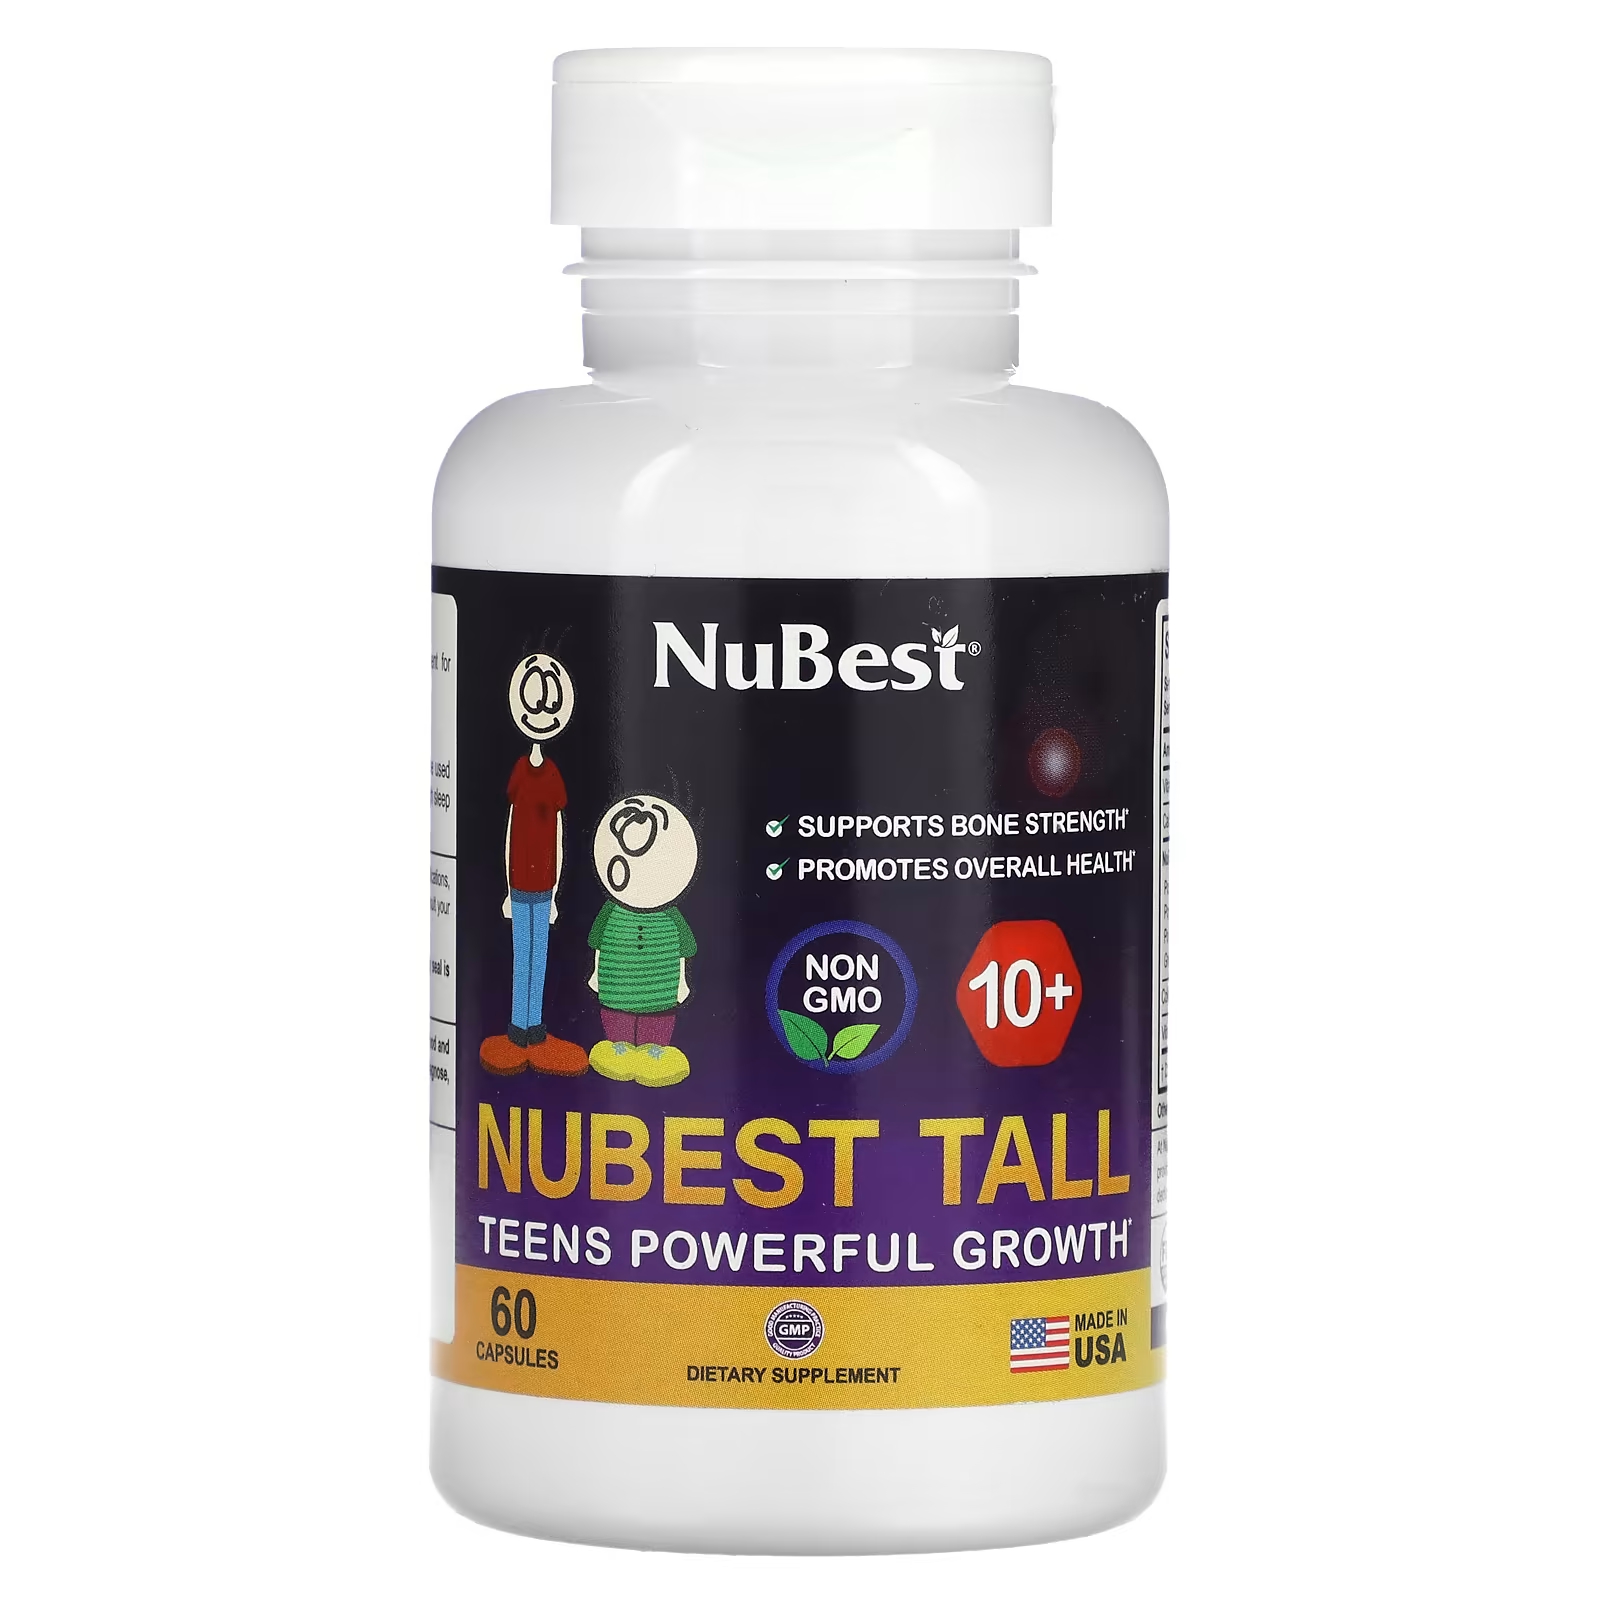 Пищевая добавка NuBest для здорового роста подростков, 60 капсул пищевая добавка nubest коллаген премиум класса 90 капсул